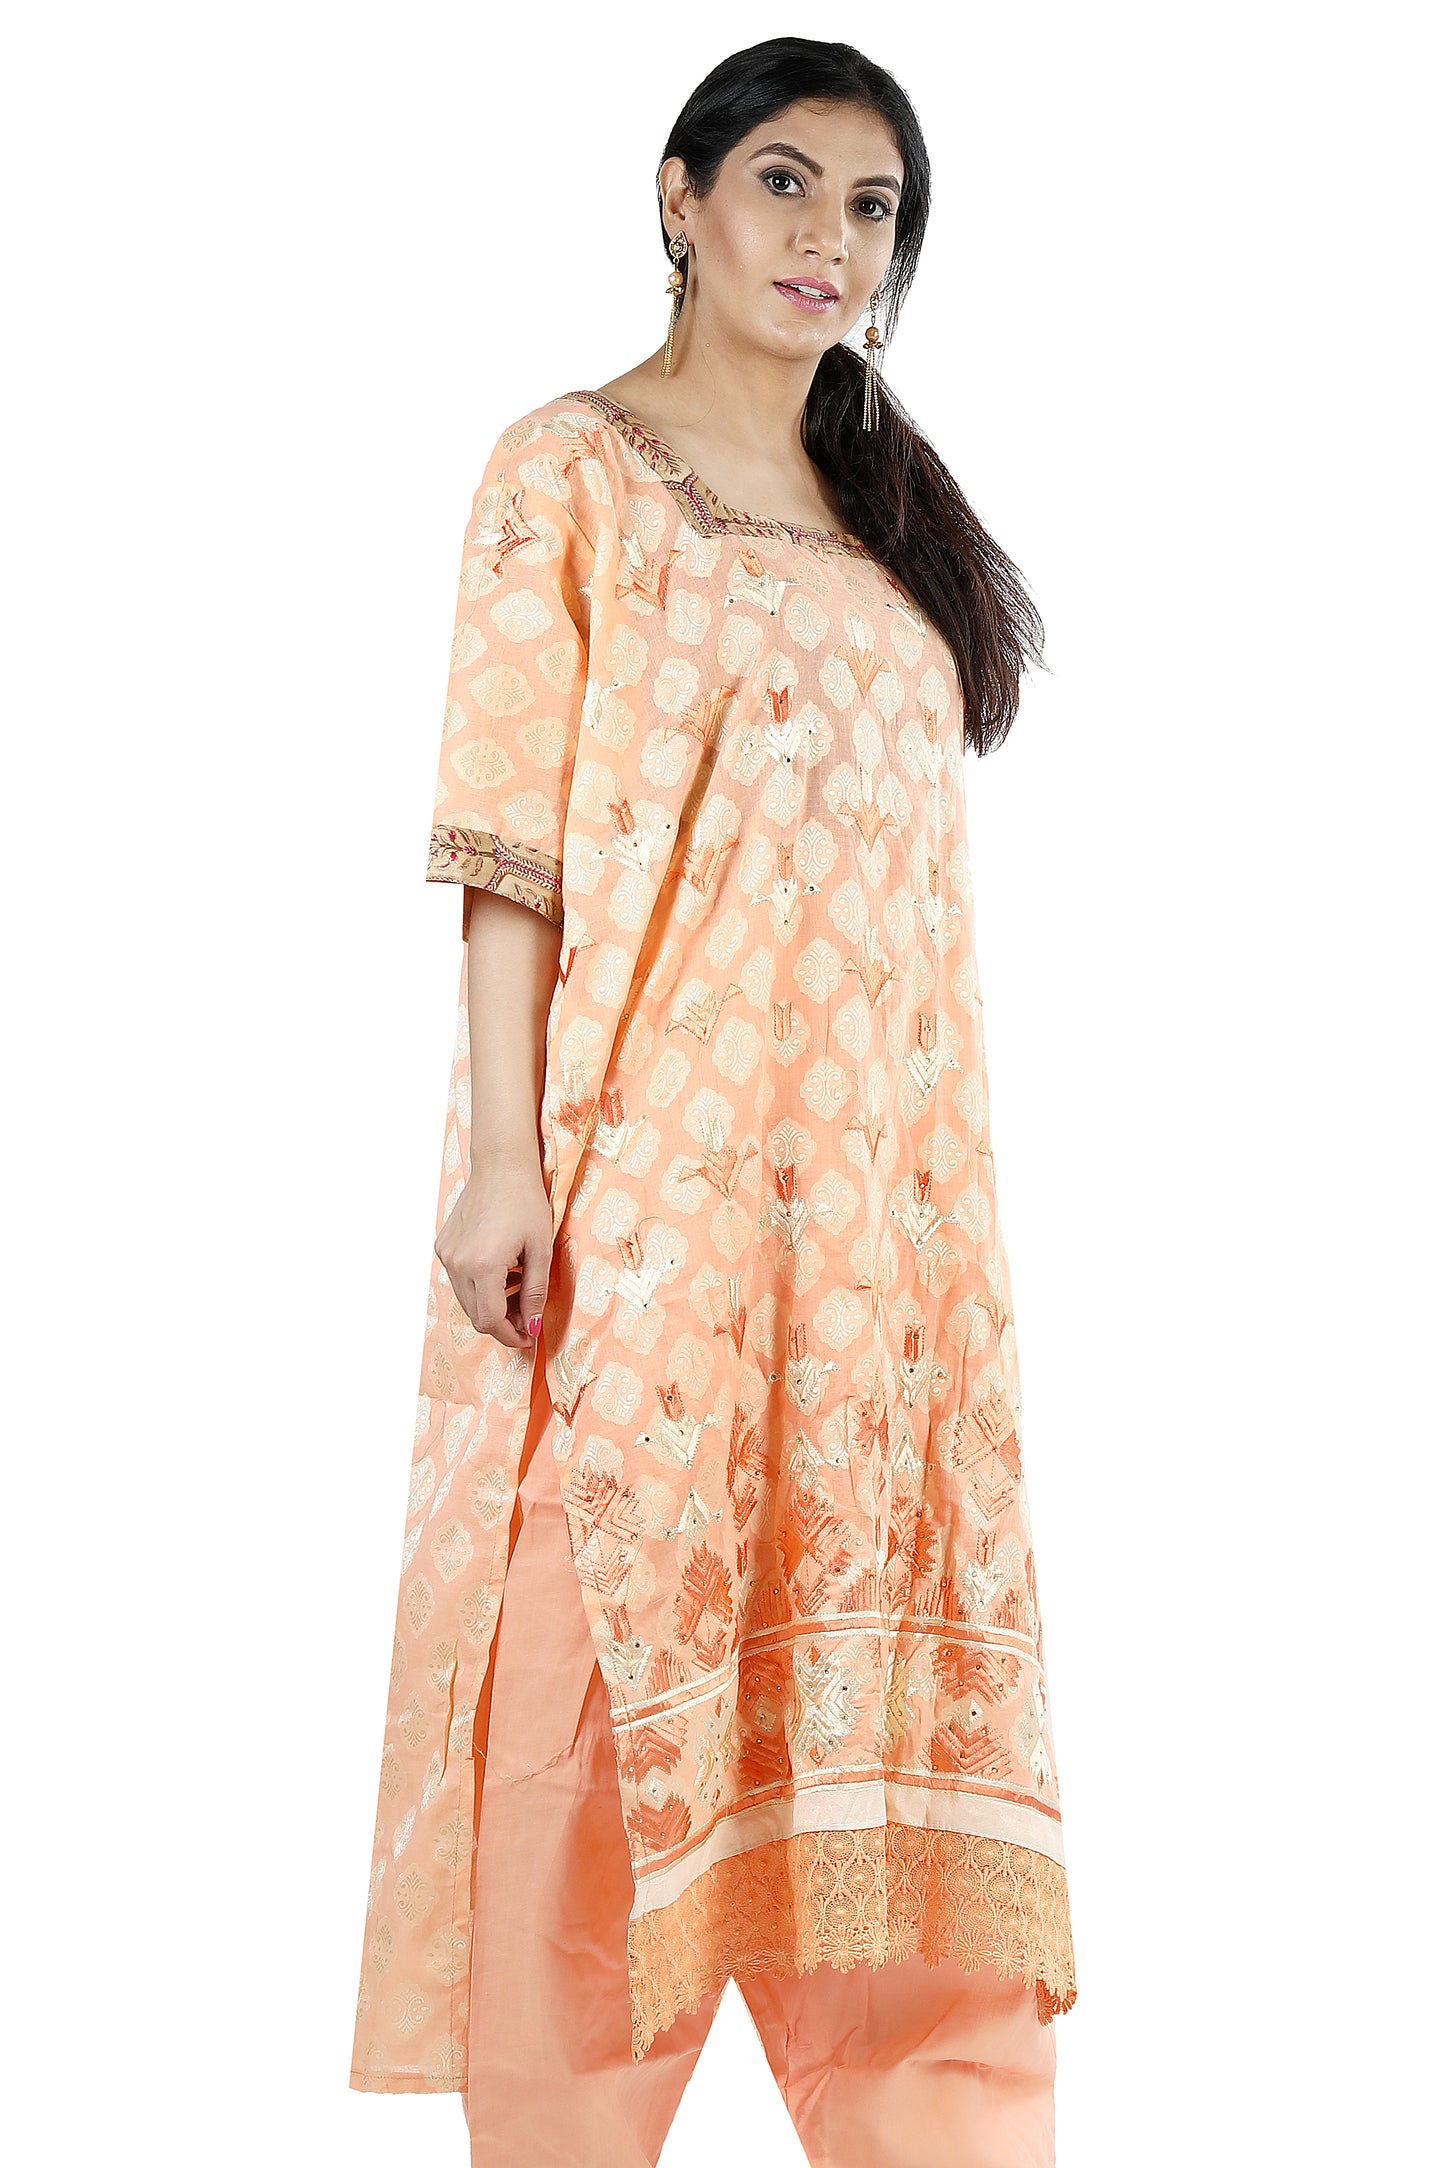 Orange Cotton Salwar kameez Dress Plus chest Size 50